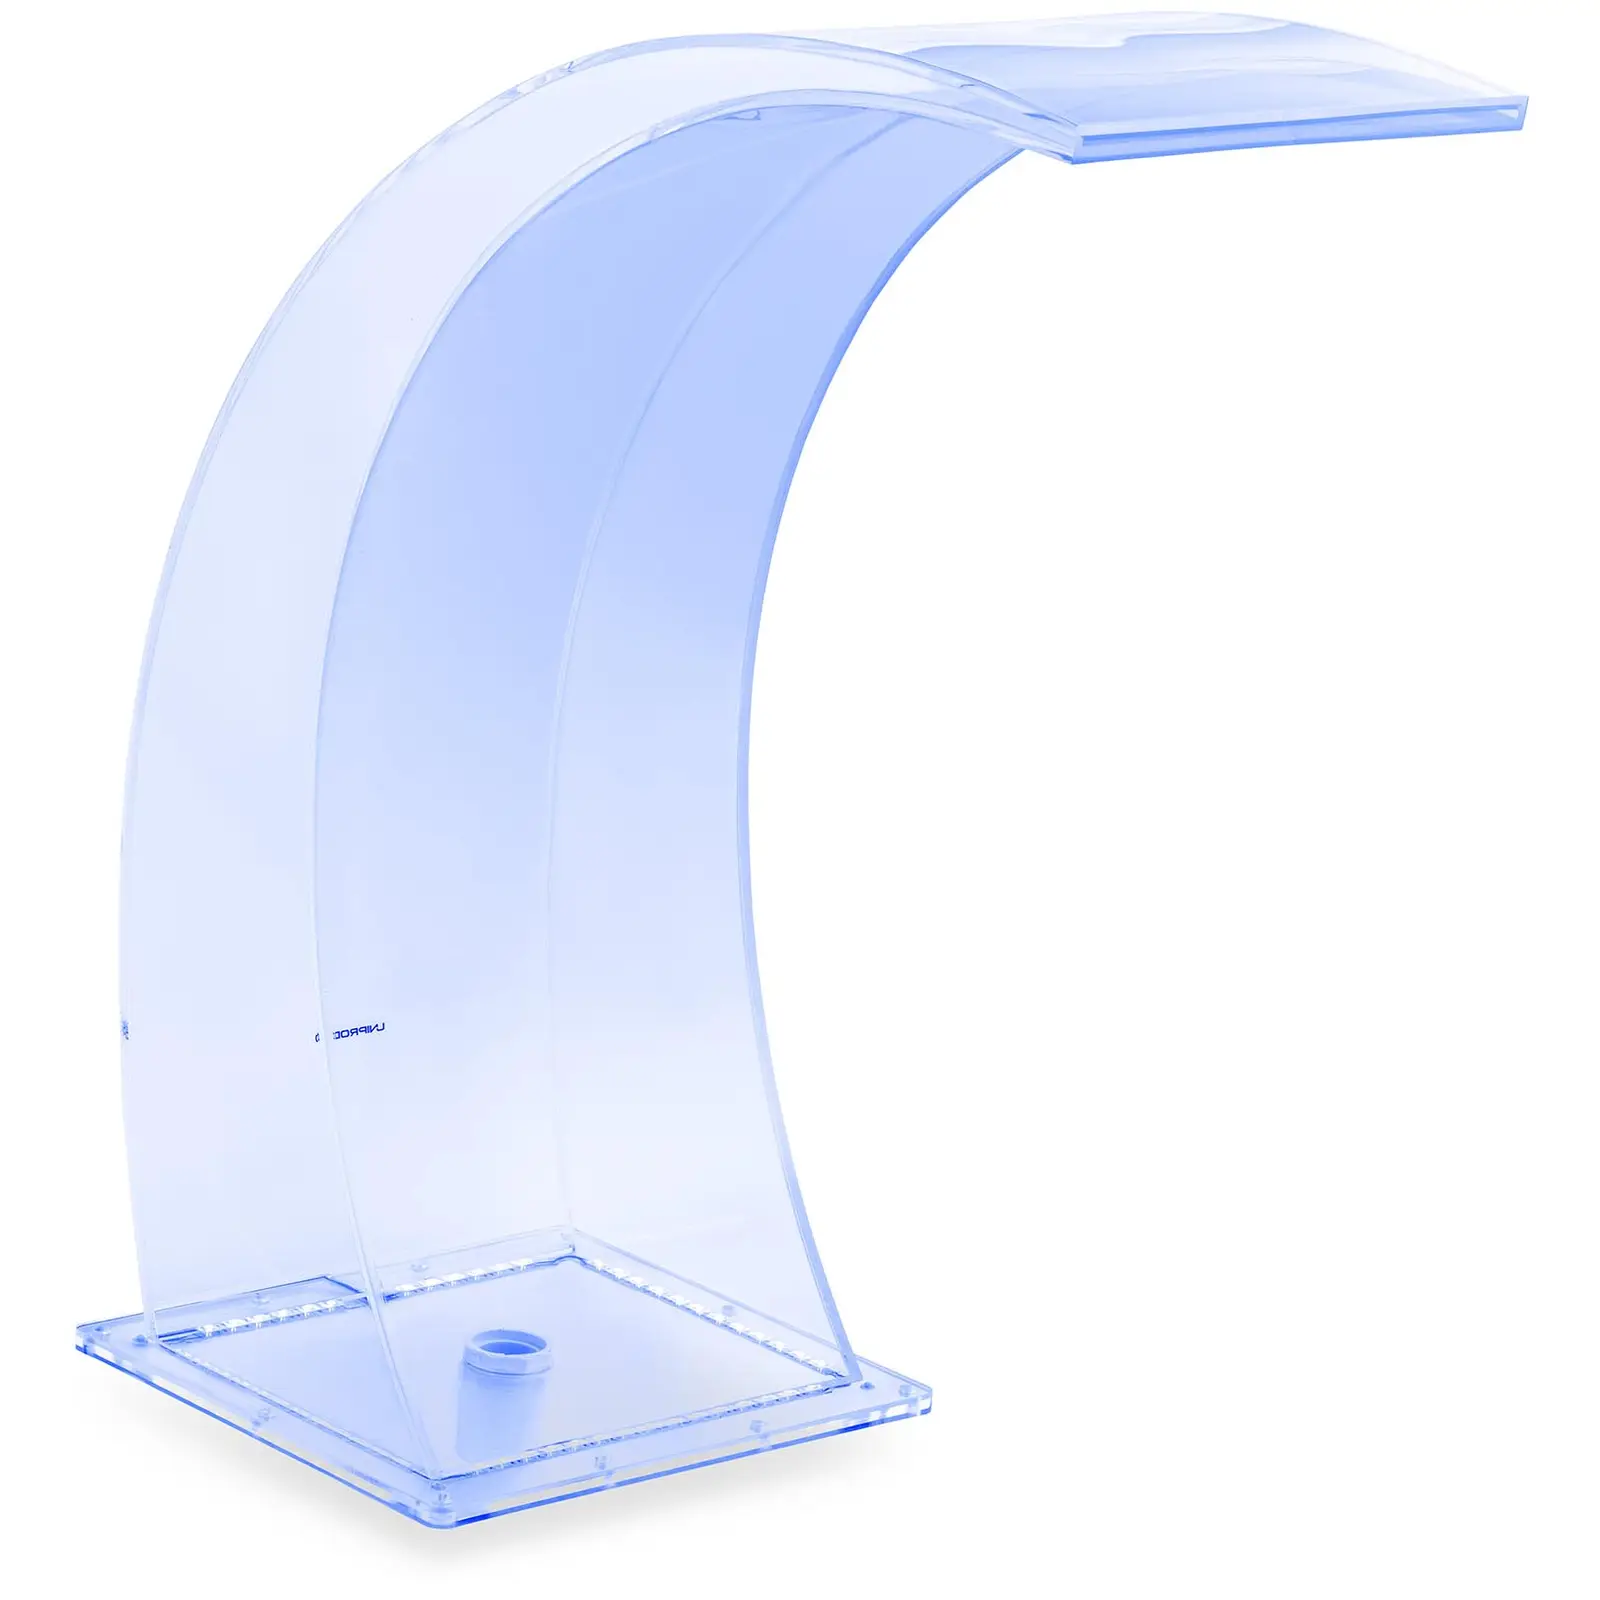 Surge shower - 35 cm - LED lighting - Blue / White